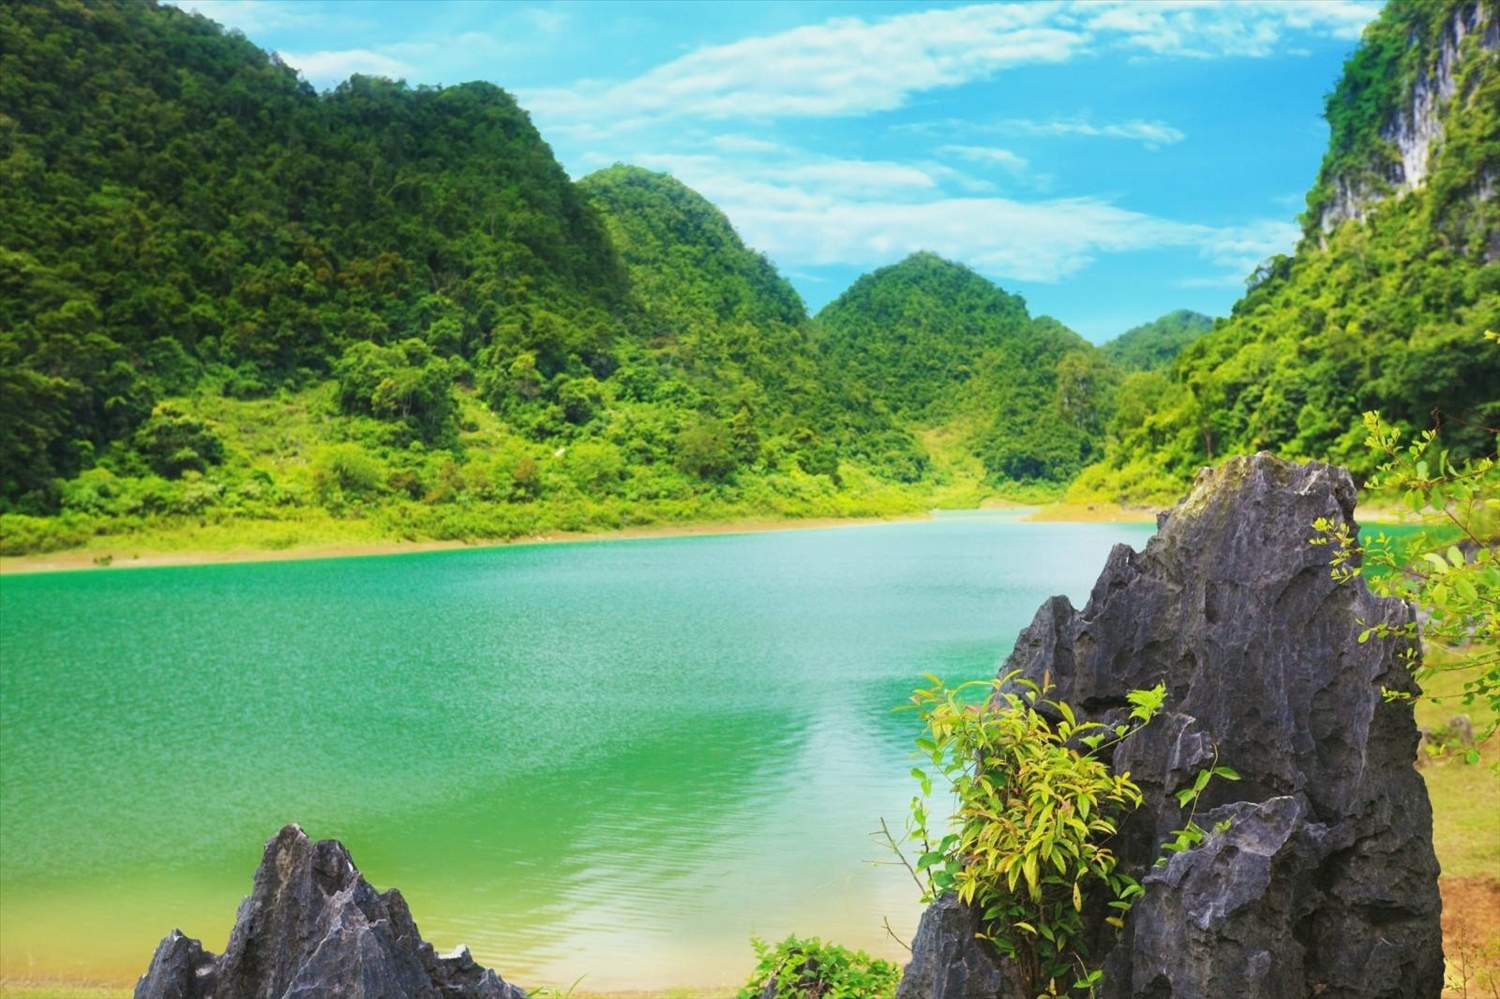 Sắc nước xanh như ngọc của hồ Thang Hen.